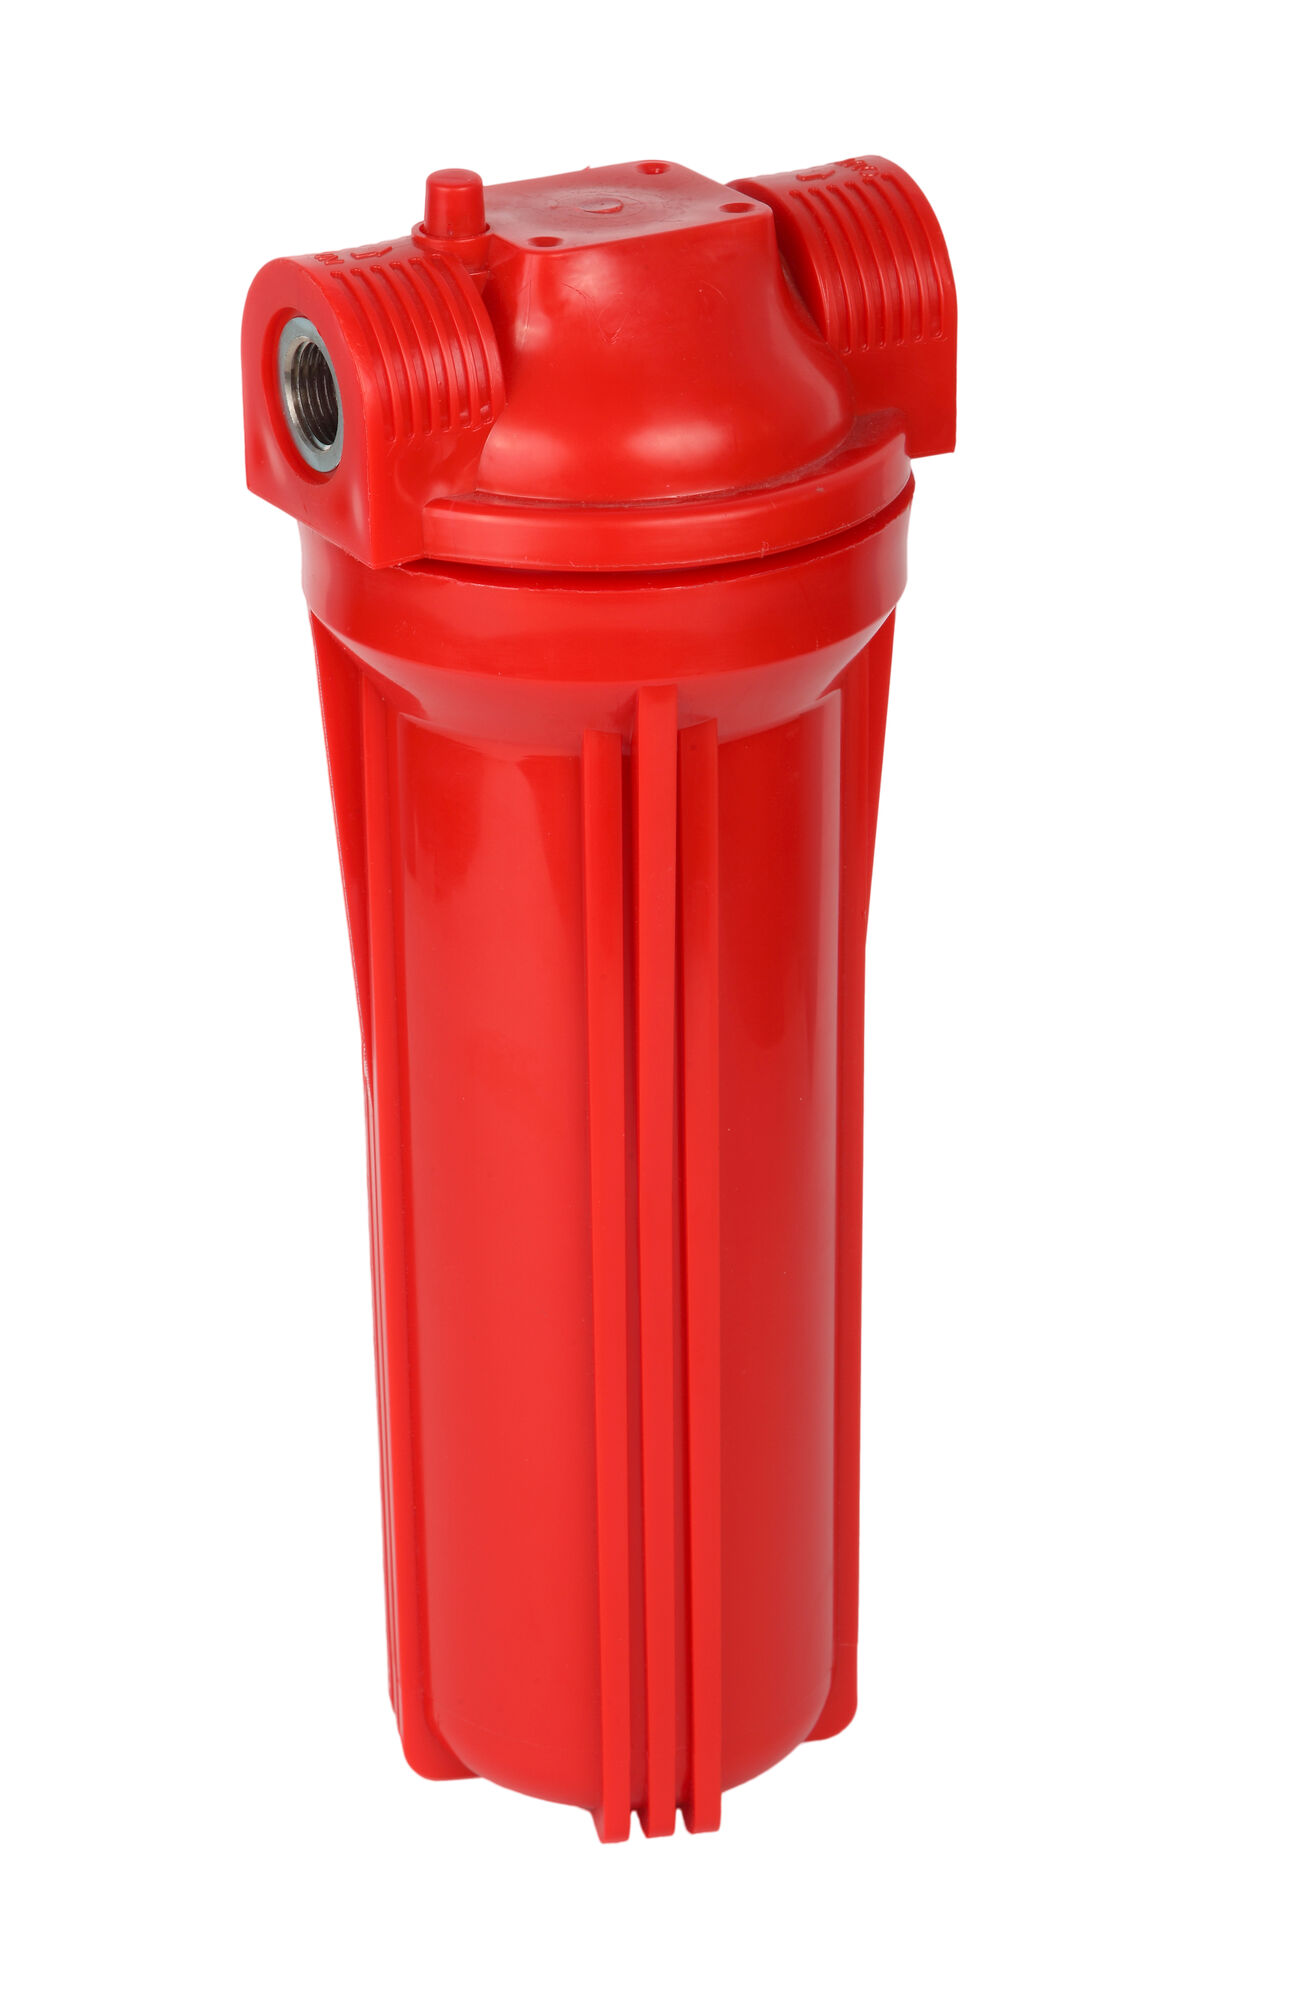 Фильтр для горячей воды Акватек Slim line FMR34 (красный корпус 10", 3/4)